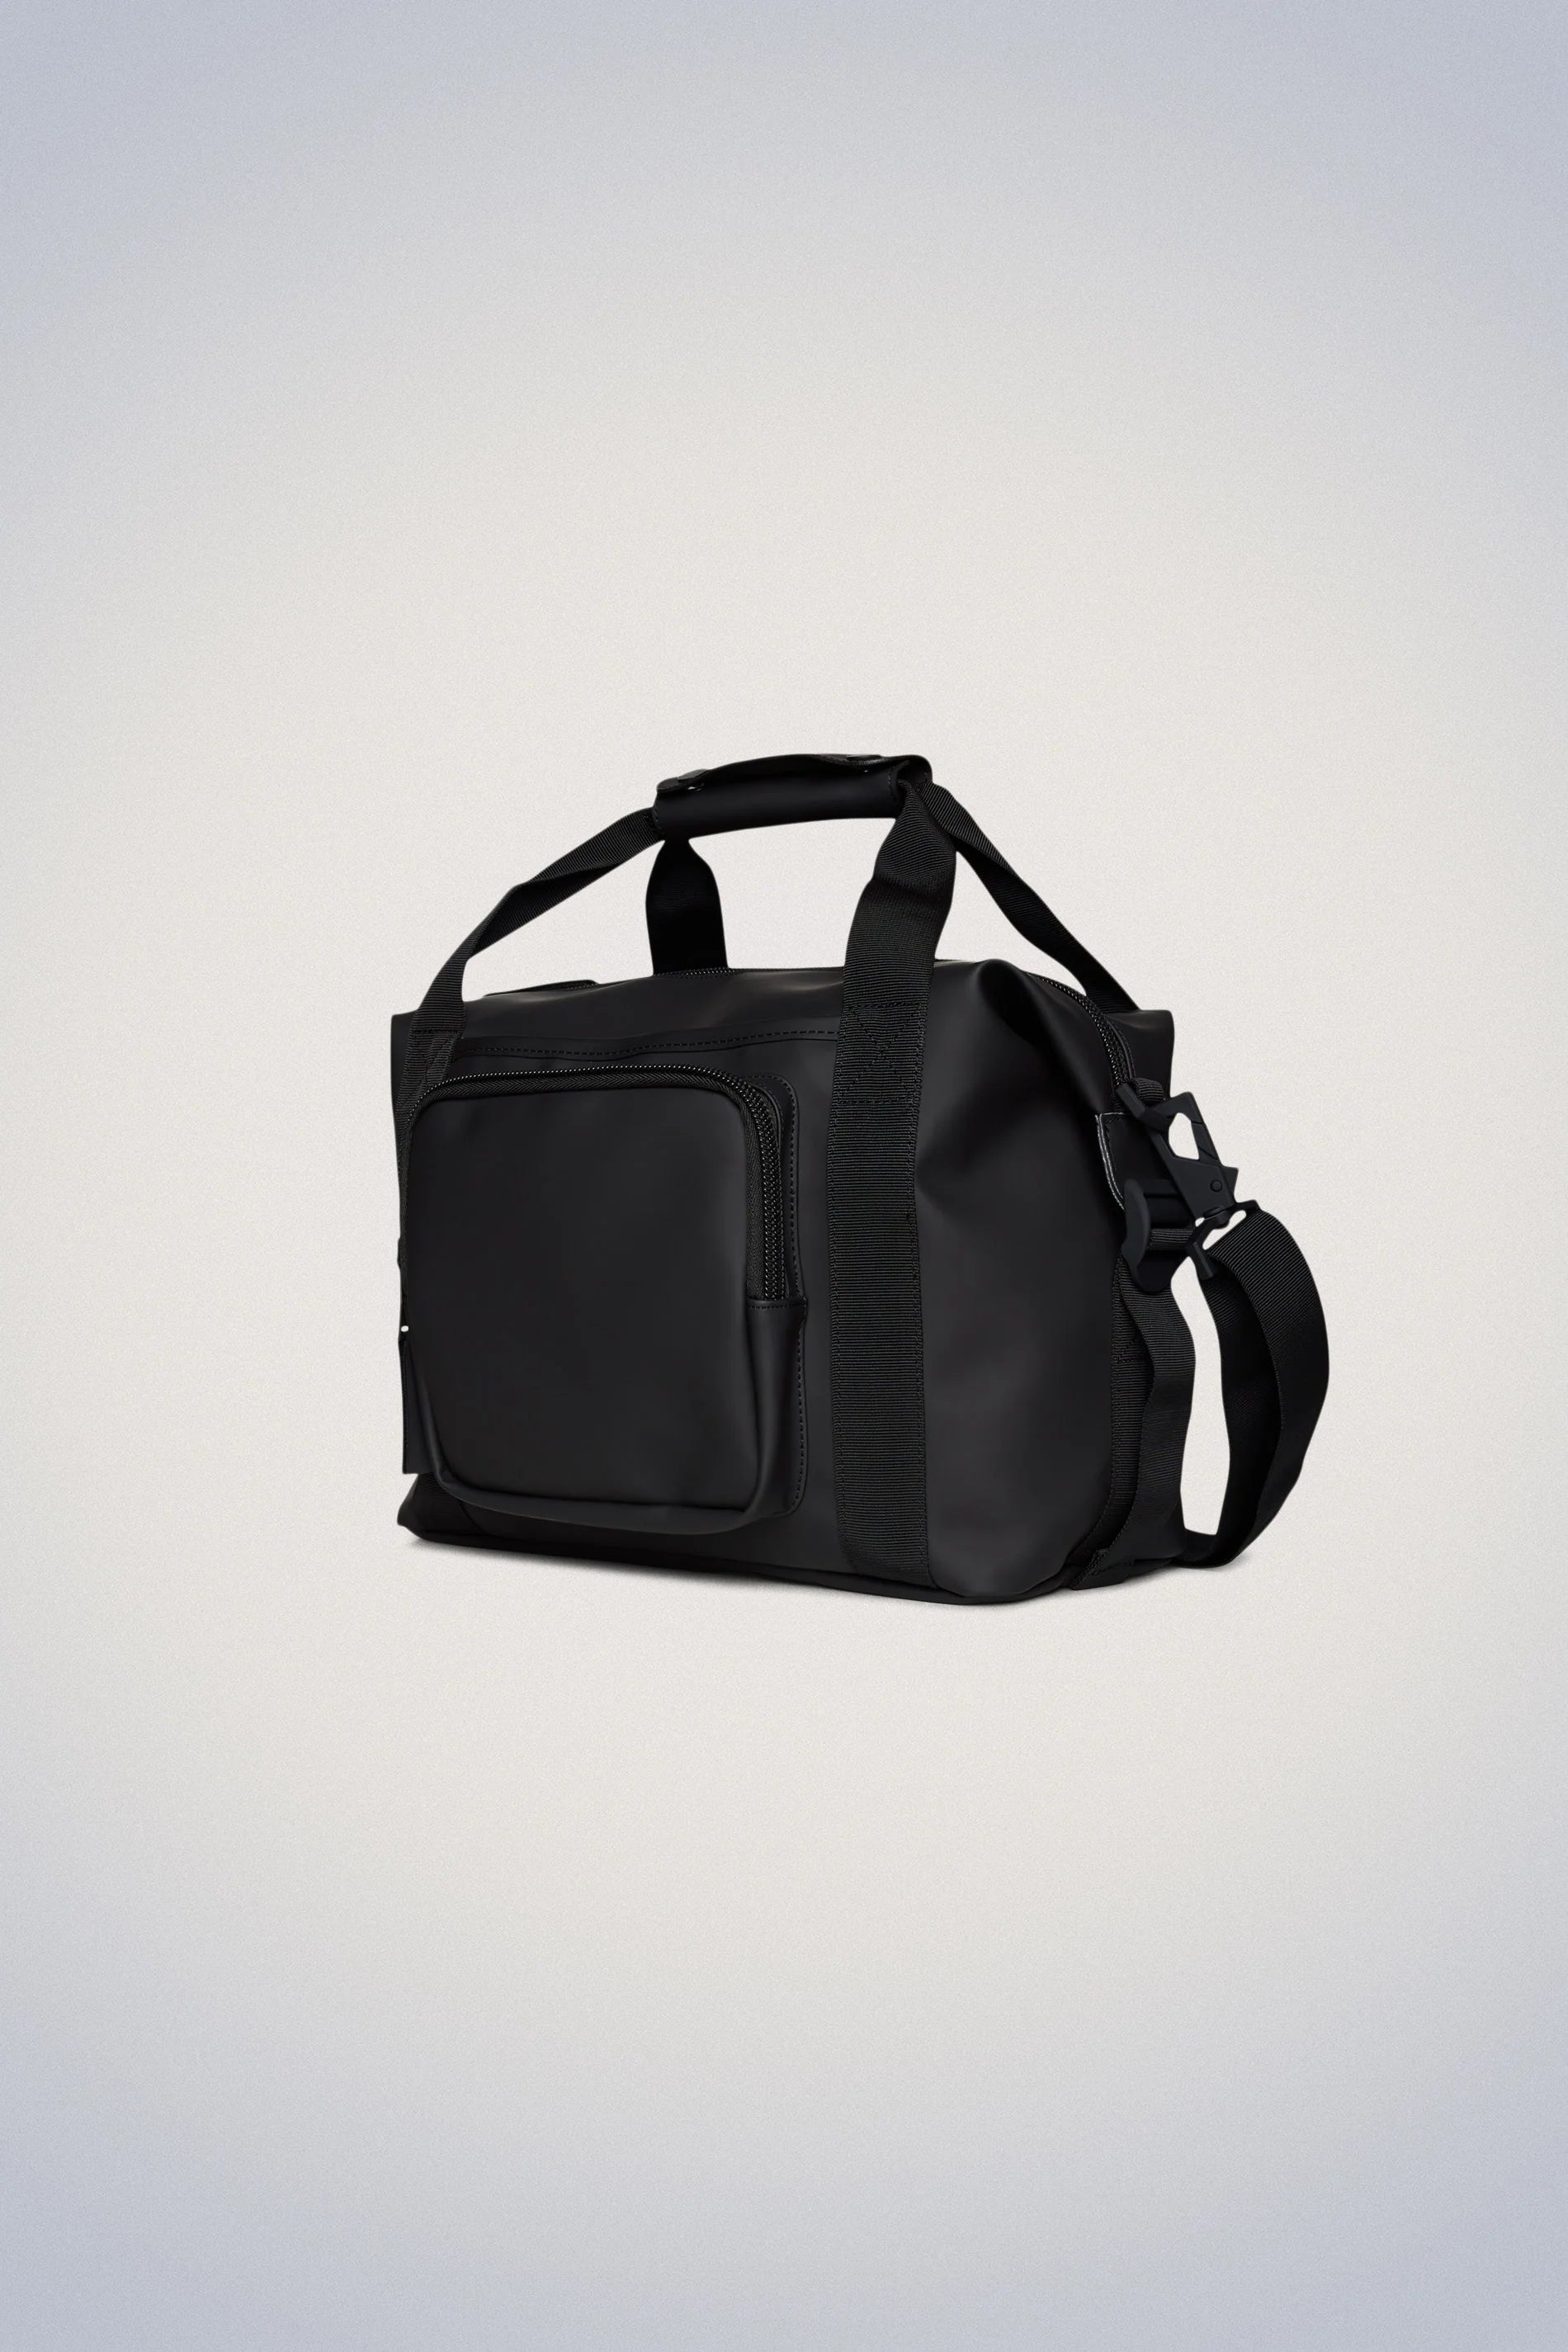 Texel Kit Bag